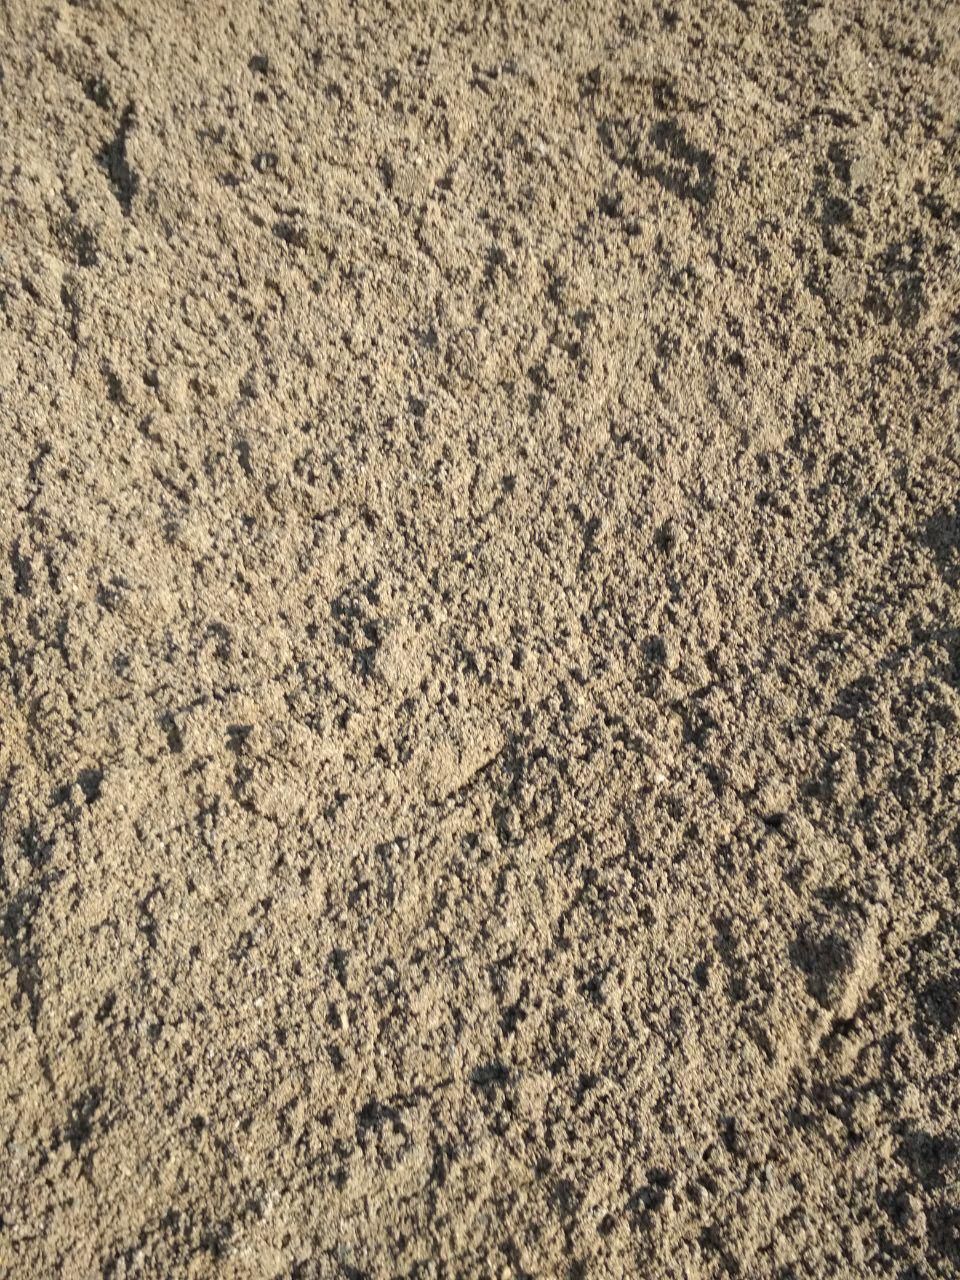 Песок из отсевов дробления: что это, как получается, где используется